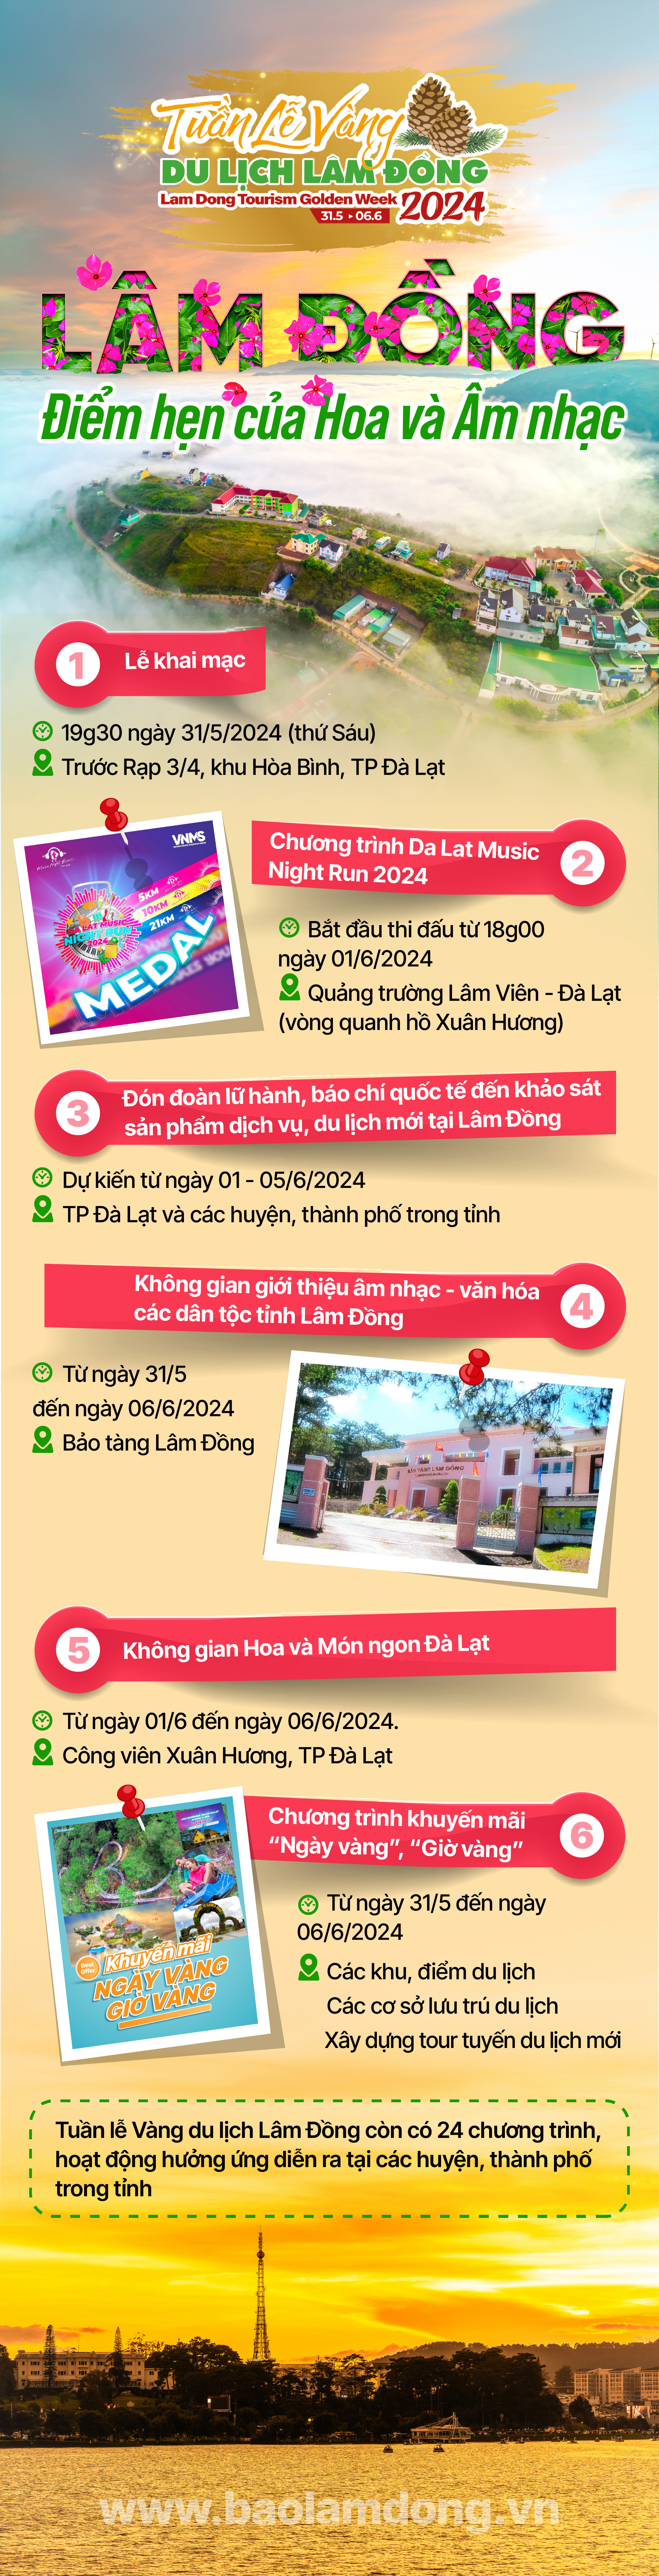 [Infographic] Nhiều sự kiện hấp dẫn tại Tuần lễ Vàng du lịch Lâm Đồng 2024